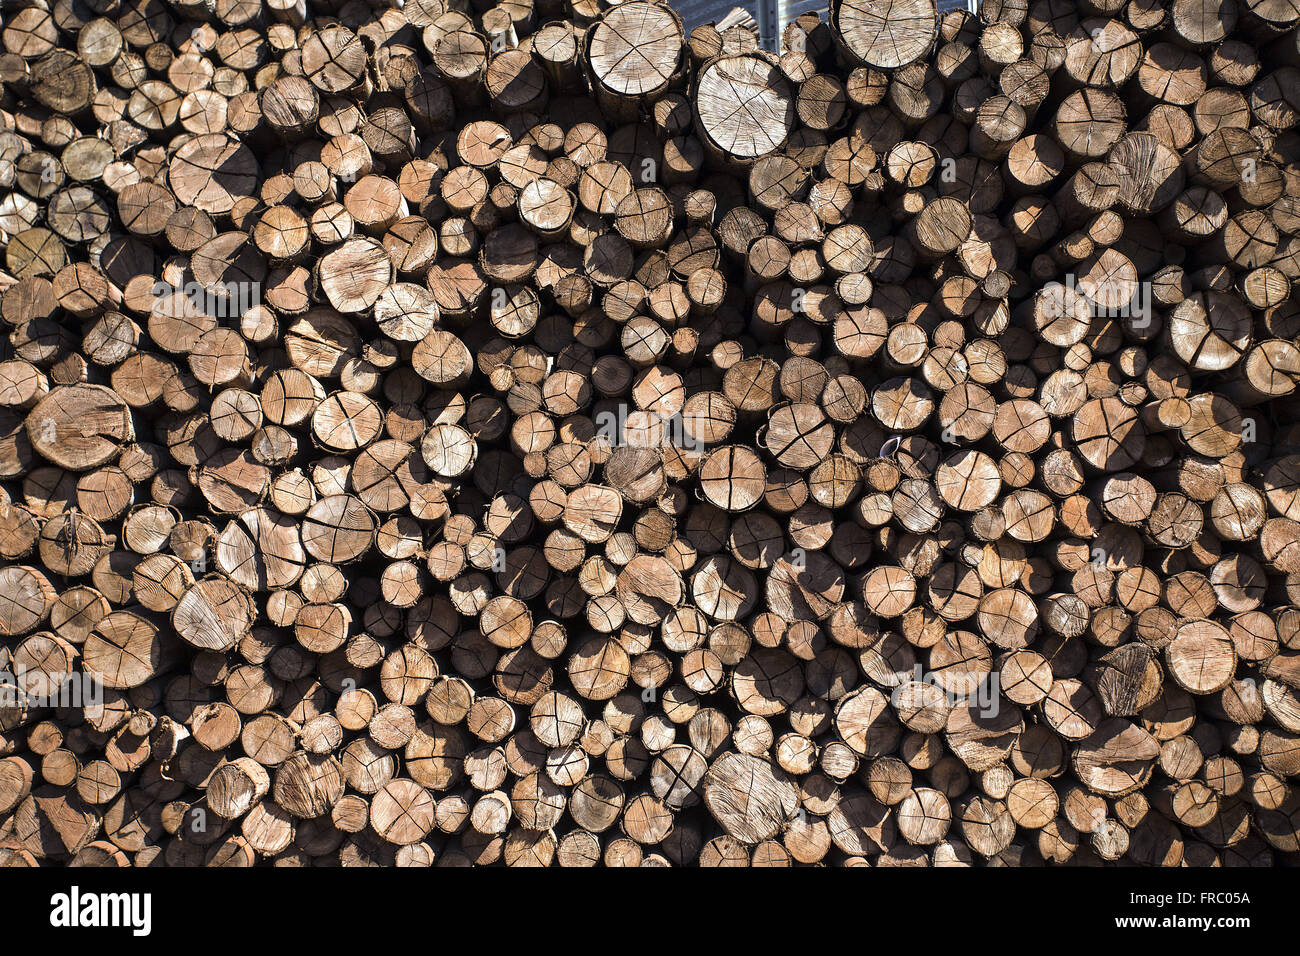 Détail du bois utilisé dans les silos de stockage de céréales de l'industrie alimentaire Banque D'Images